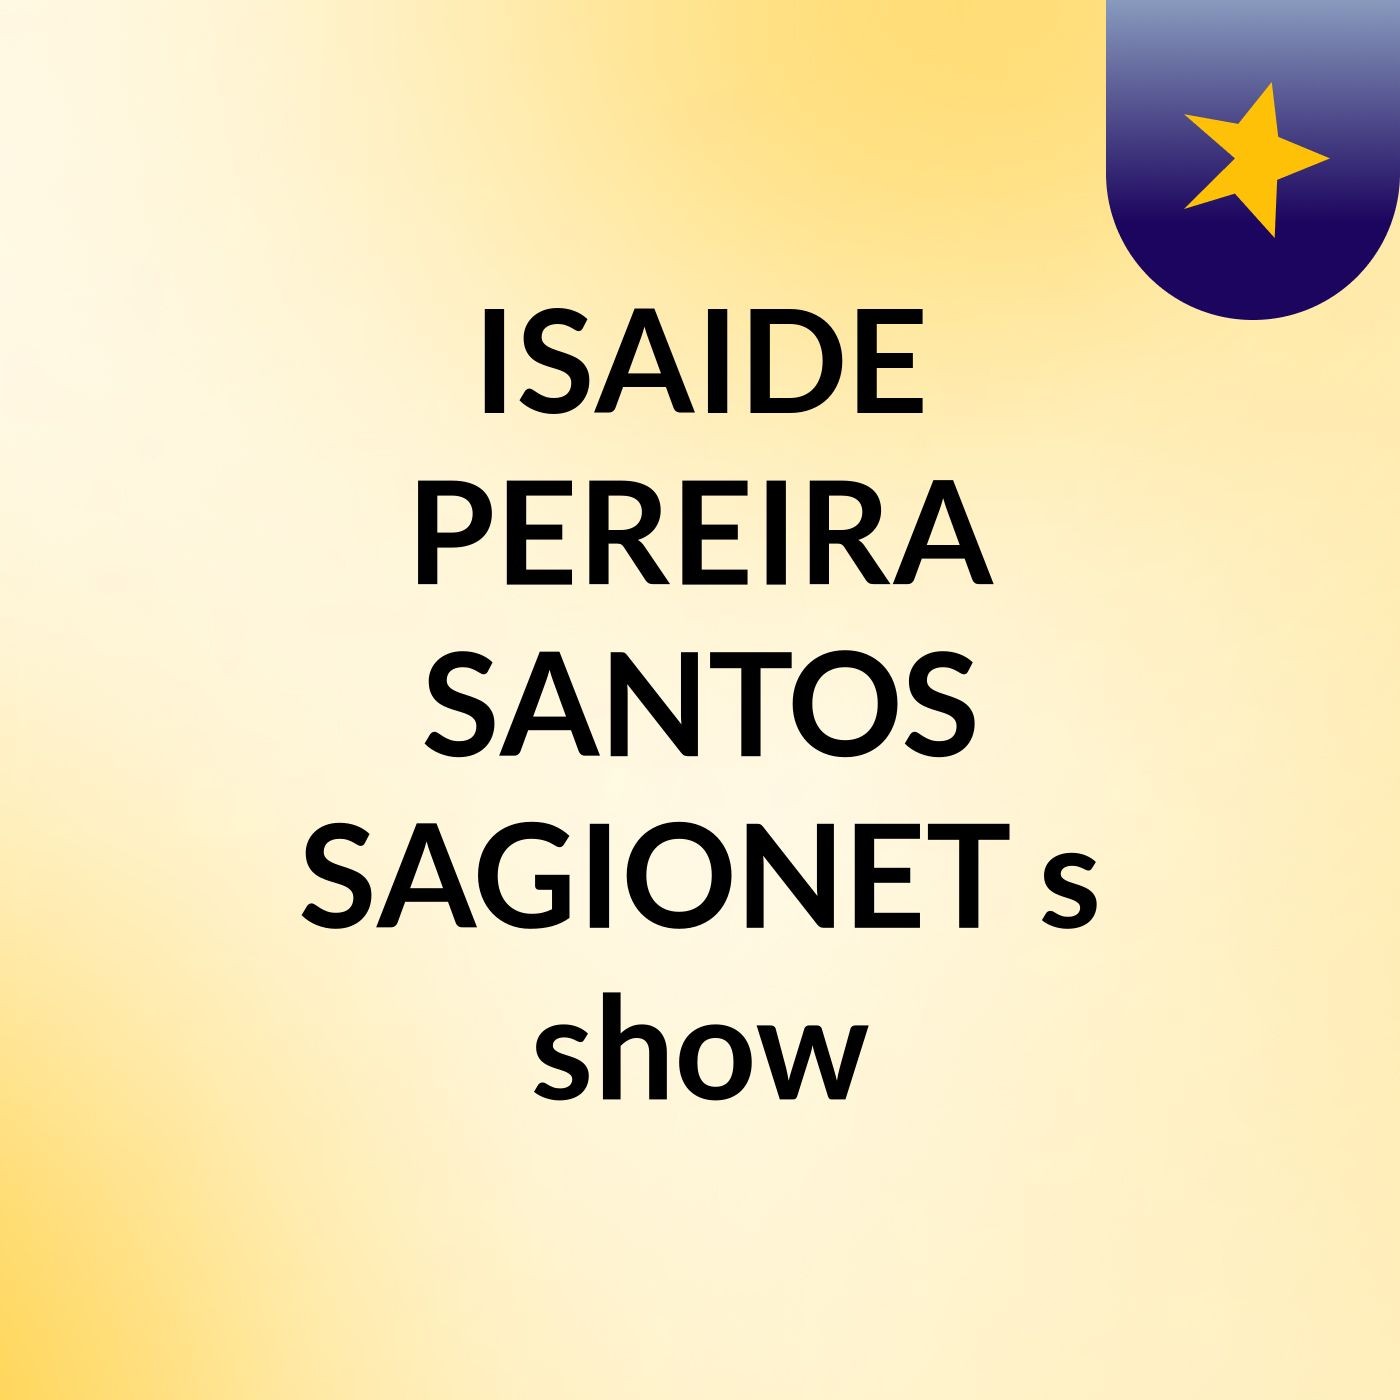 ISAIDE PEREIRA SANTOS SAGIONET's show